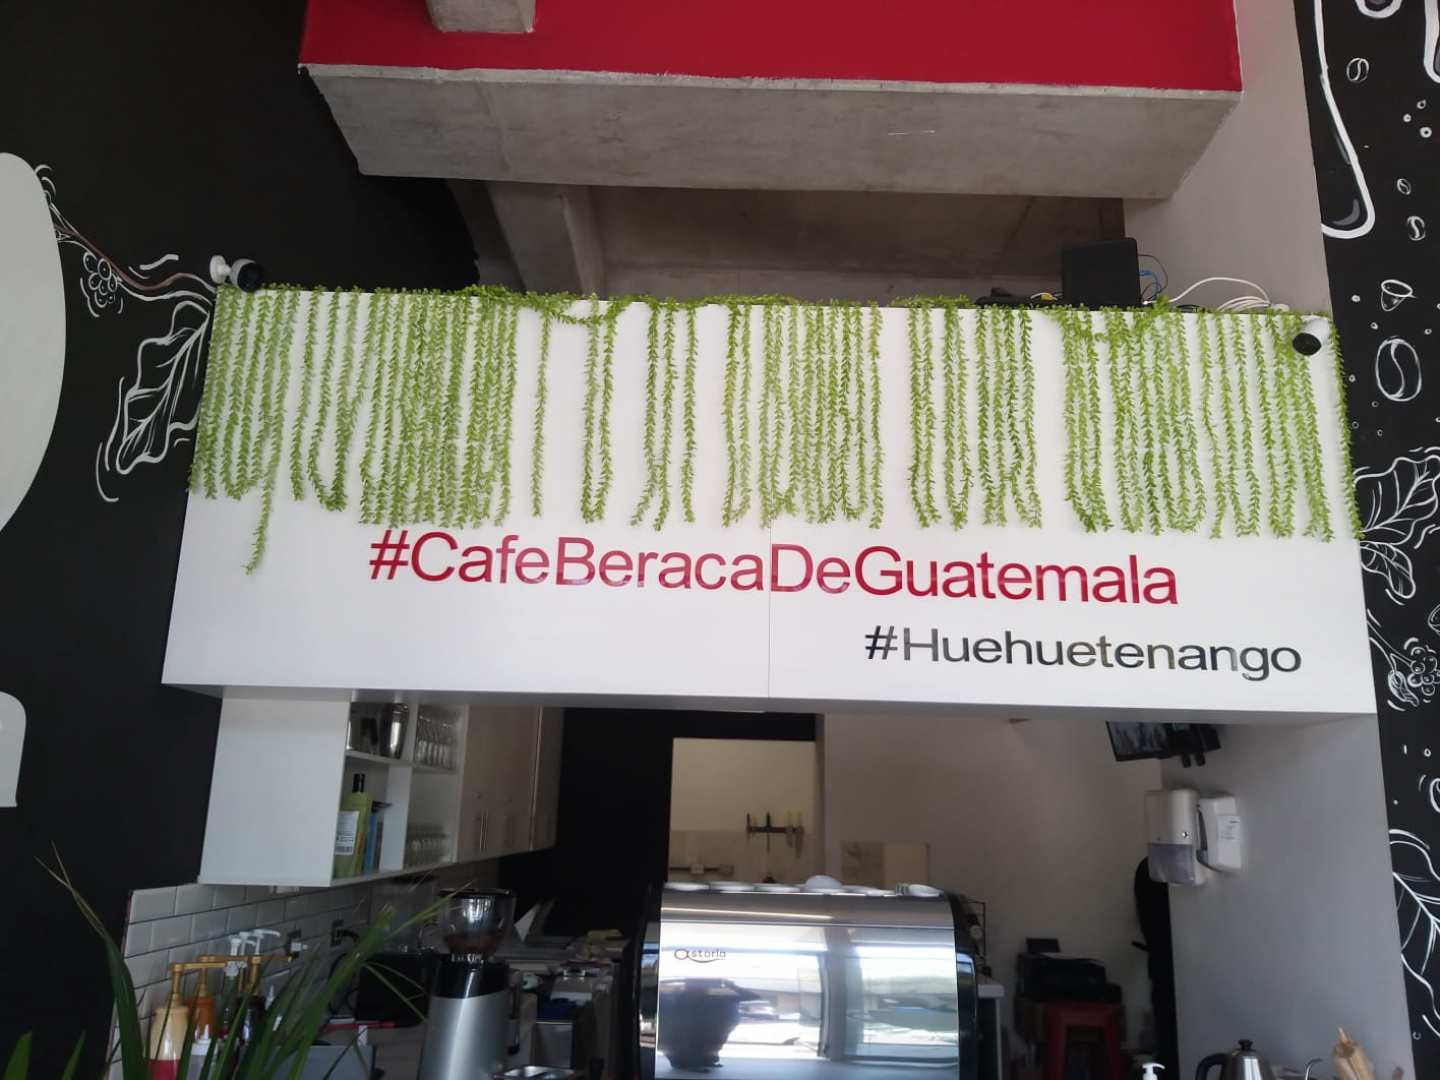 Café Beraca de Guatemala